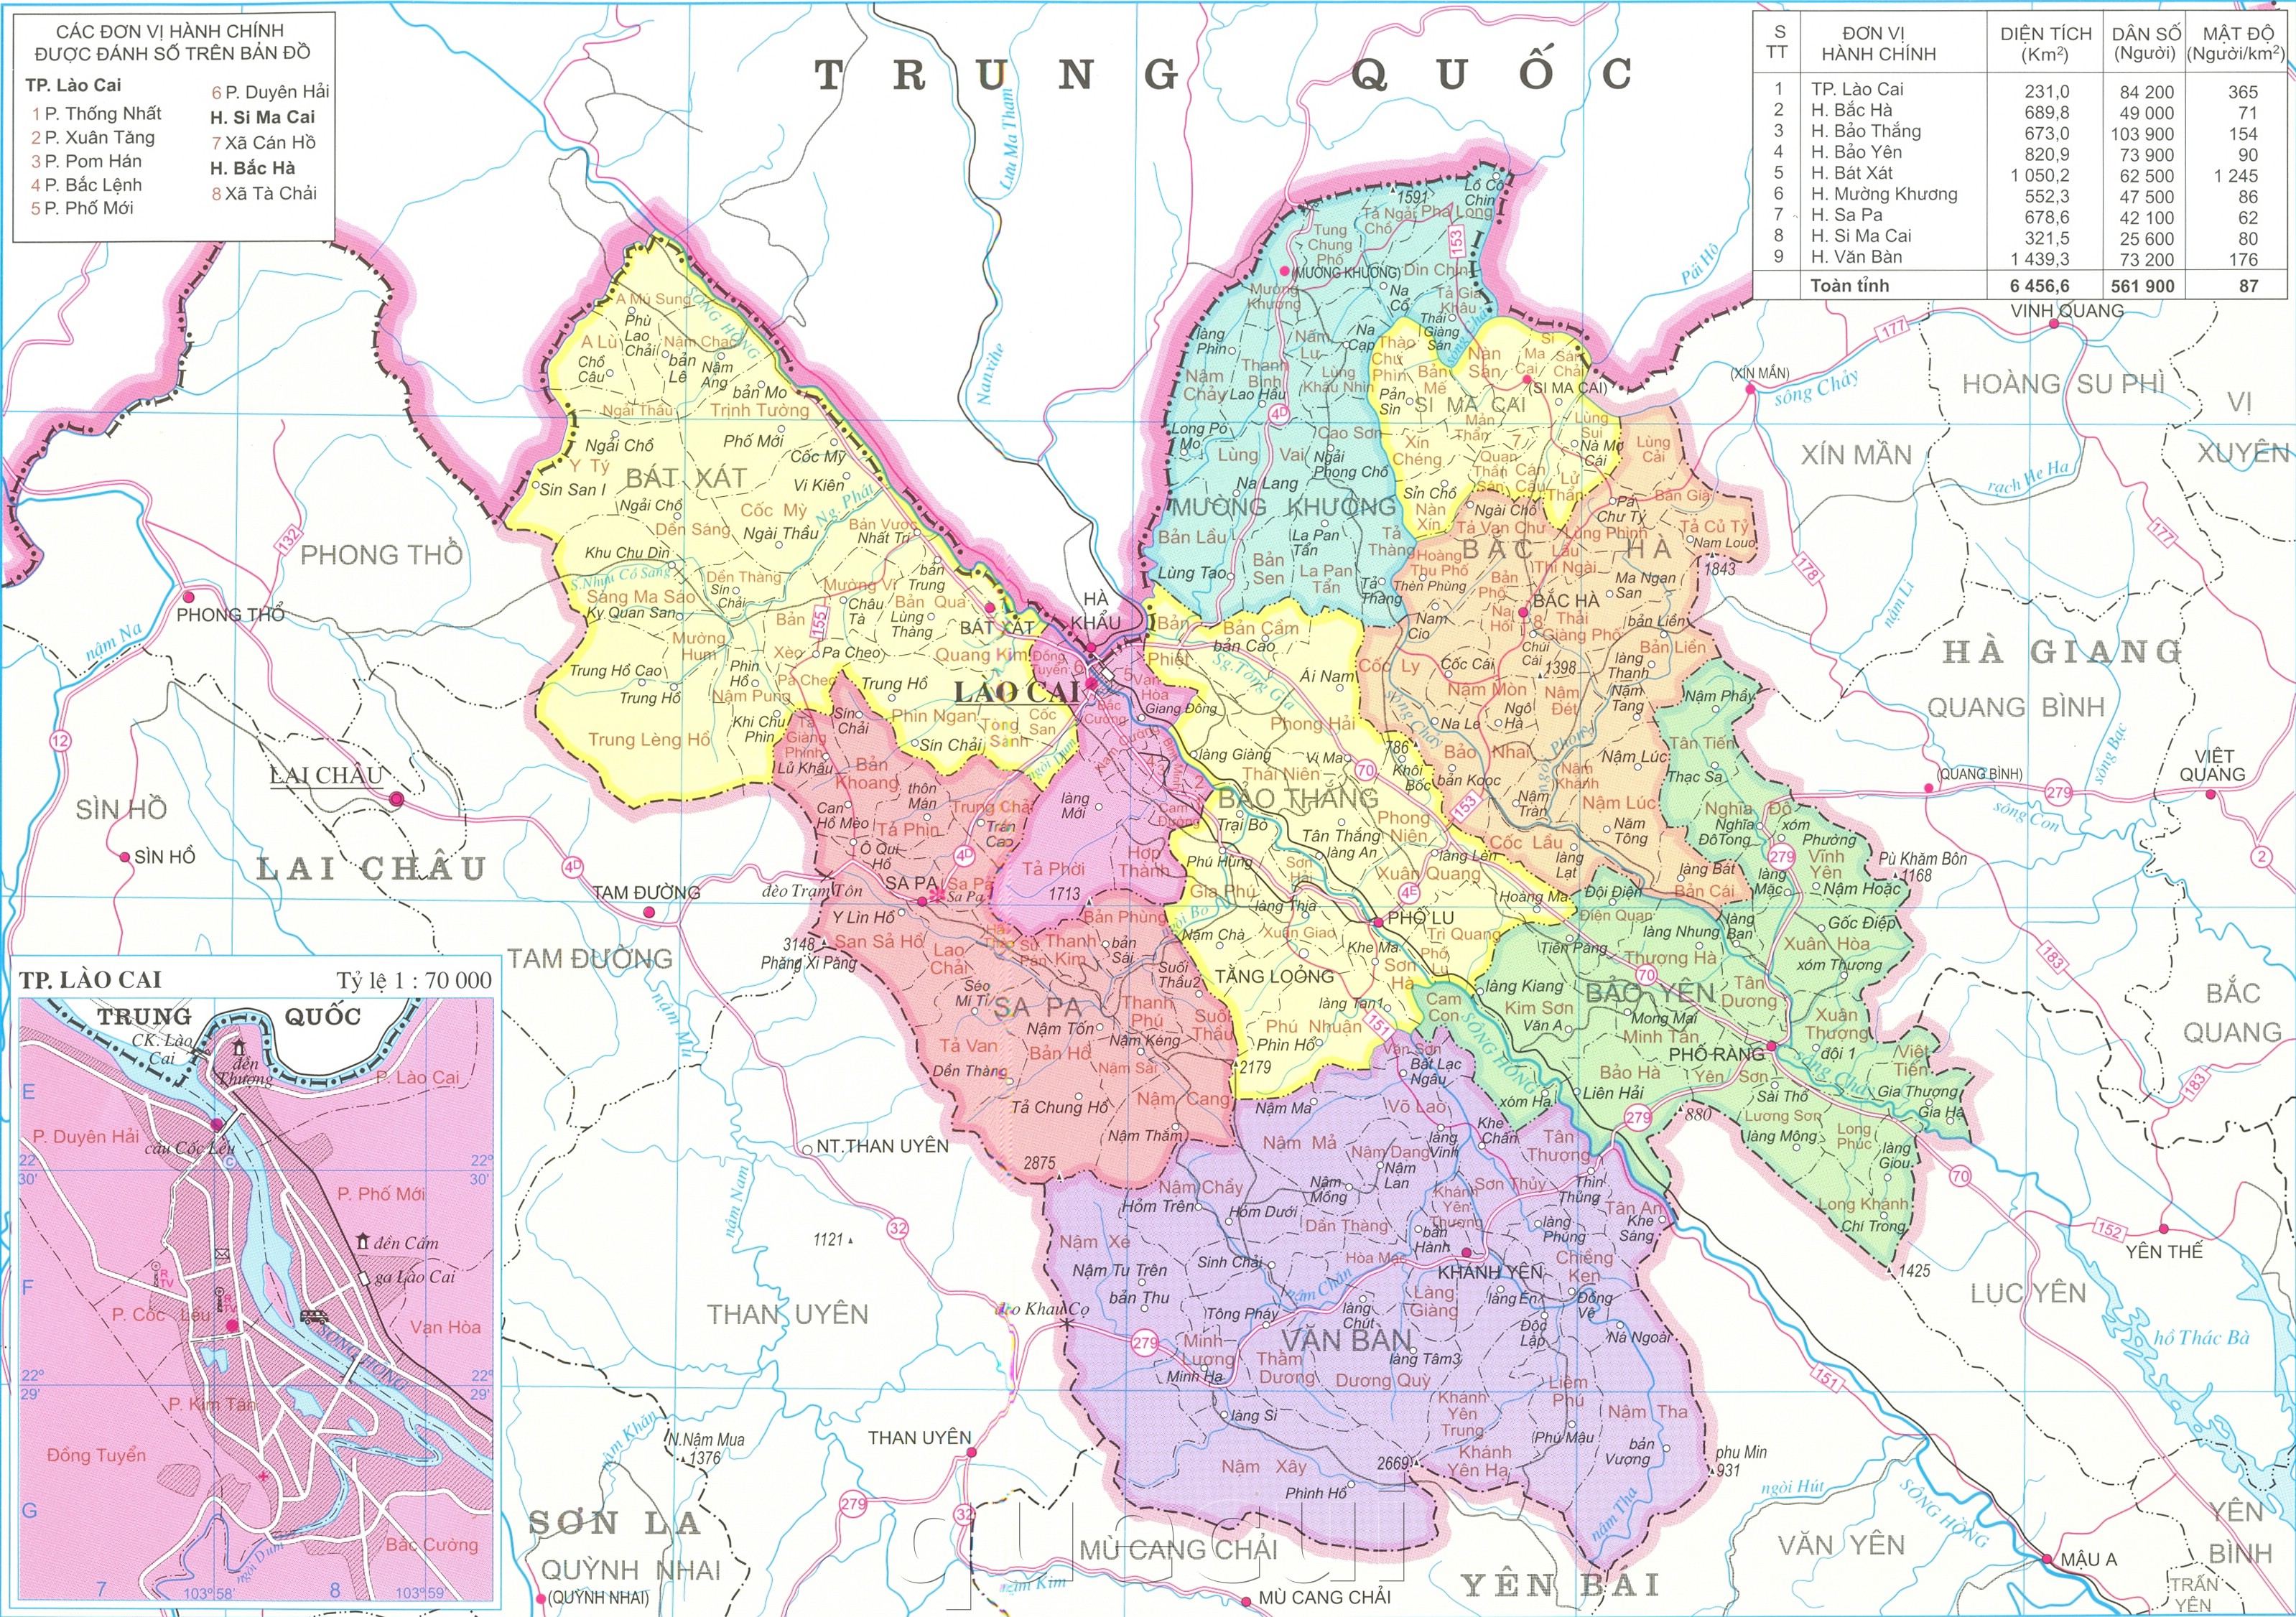 Với bản đồ hành chính tỉnh Lào Cai mới nhất, bạn sẽ được hòa mình vào cuộc sống đầy màu sắc và hấp dẫn của thành phố này. Tìm hiểu những điểm đến đẹp nhất, hệ thống giao thông hiện đại và các khu vực phát triển, cùng chúng tôi khám phá Lào Cai thông qua bản đồ hành chính mới nhất.